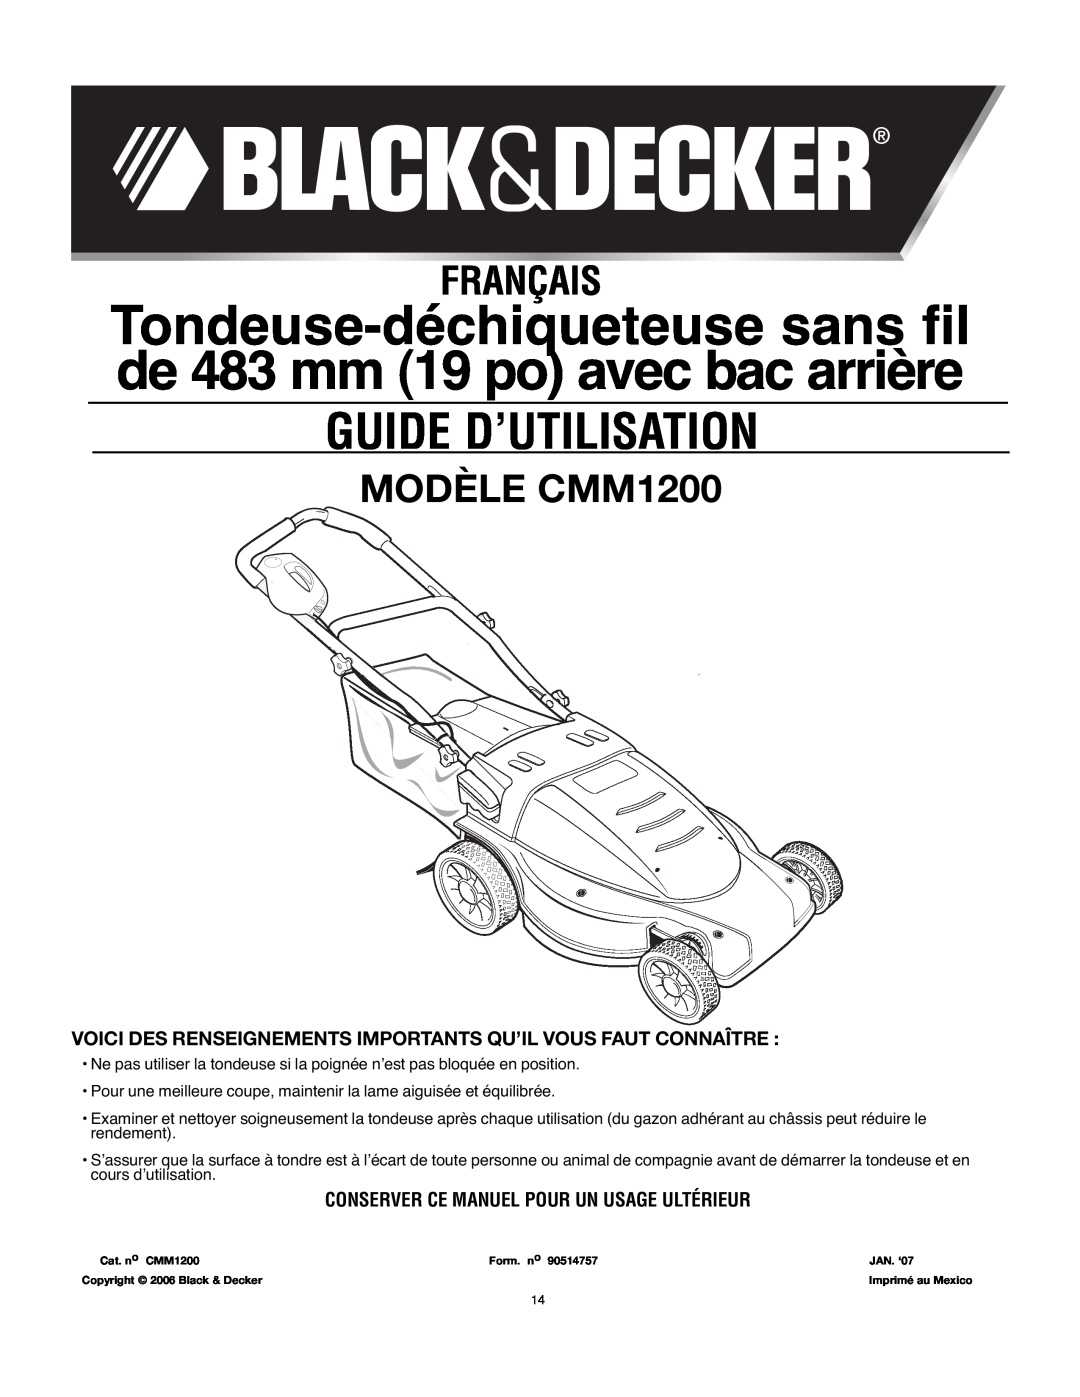 Black & Decker 90514757 Guide D’Utilisation, MODÈLE CMM1200, Conserver Ce Manuel Pour Un Usage Ultérieur, Français 